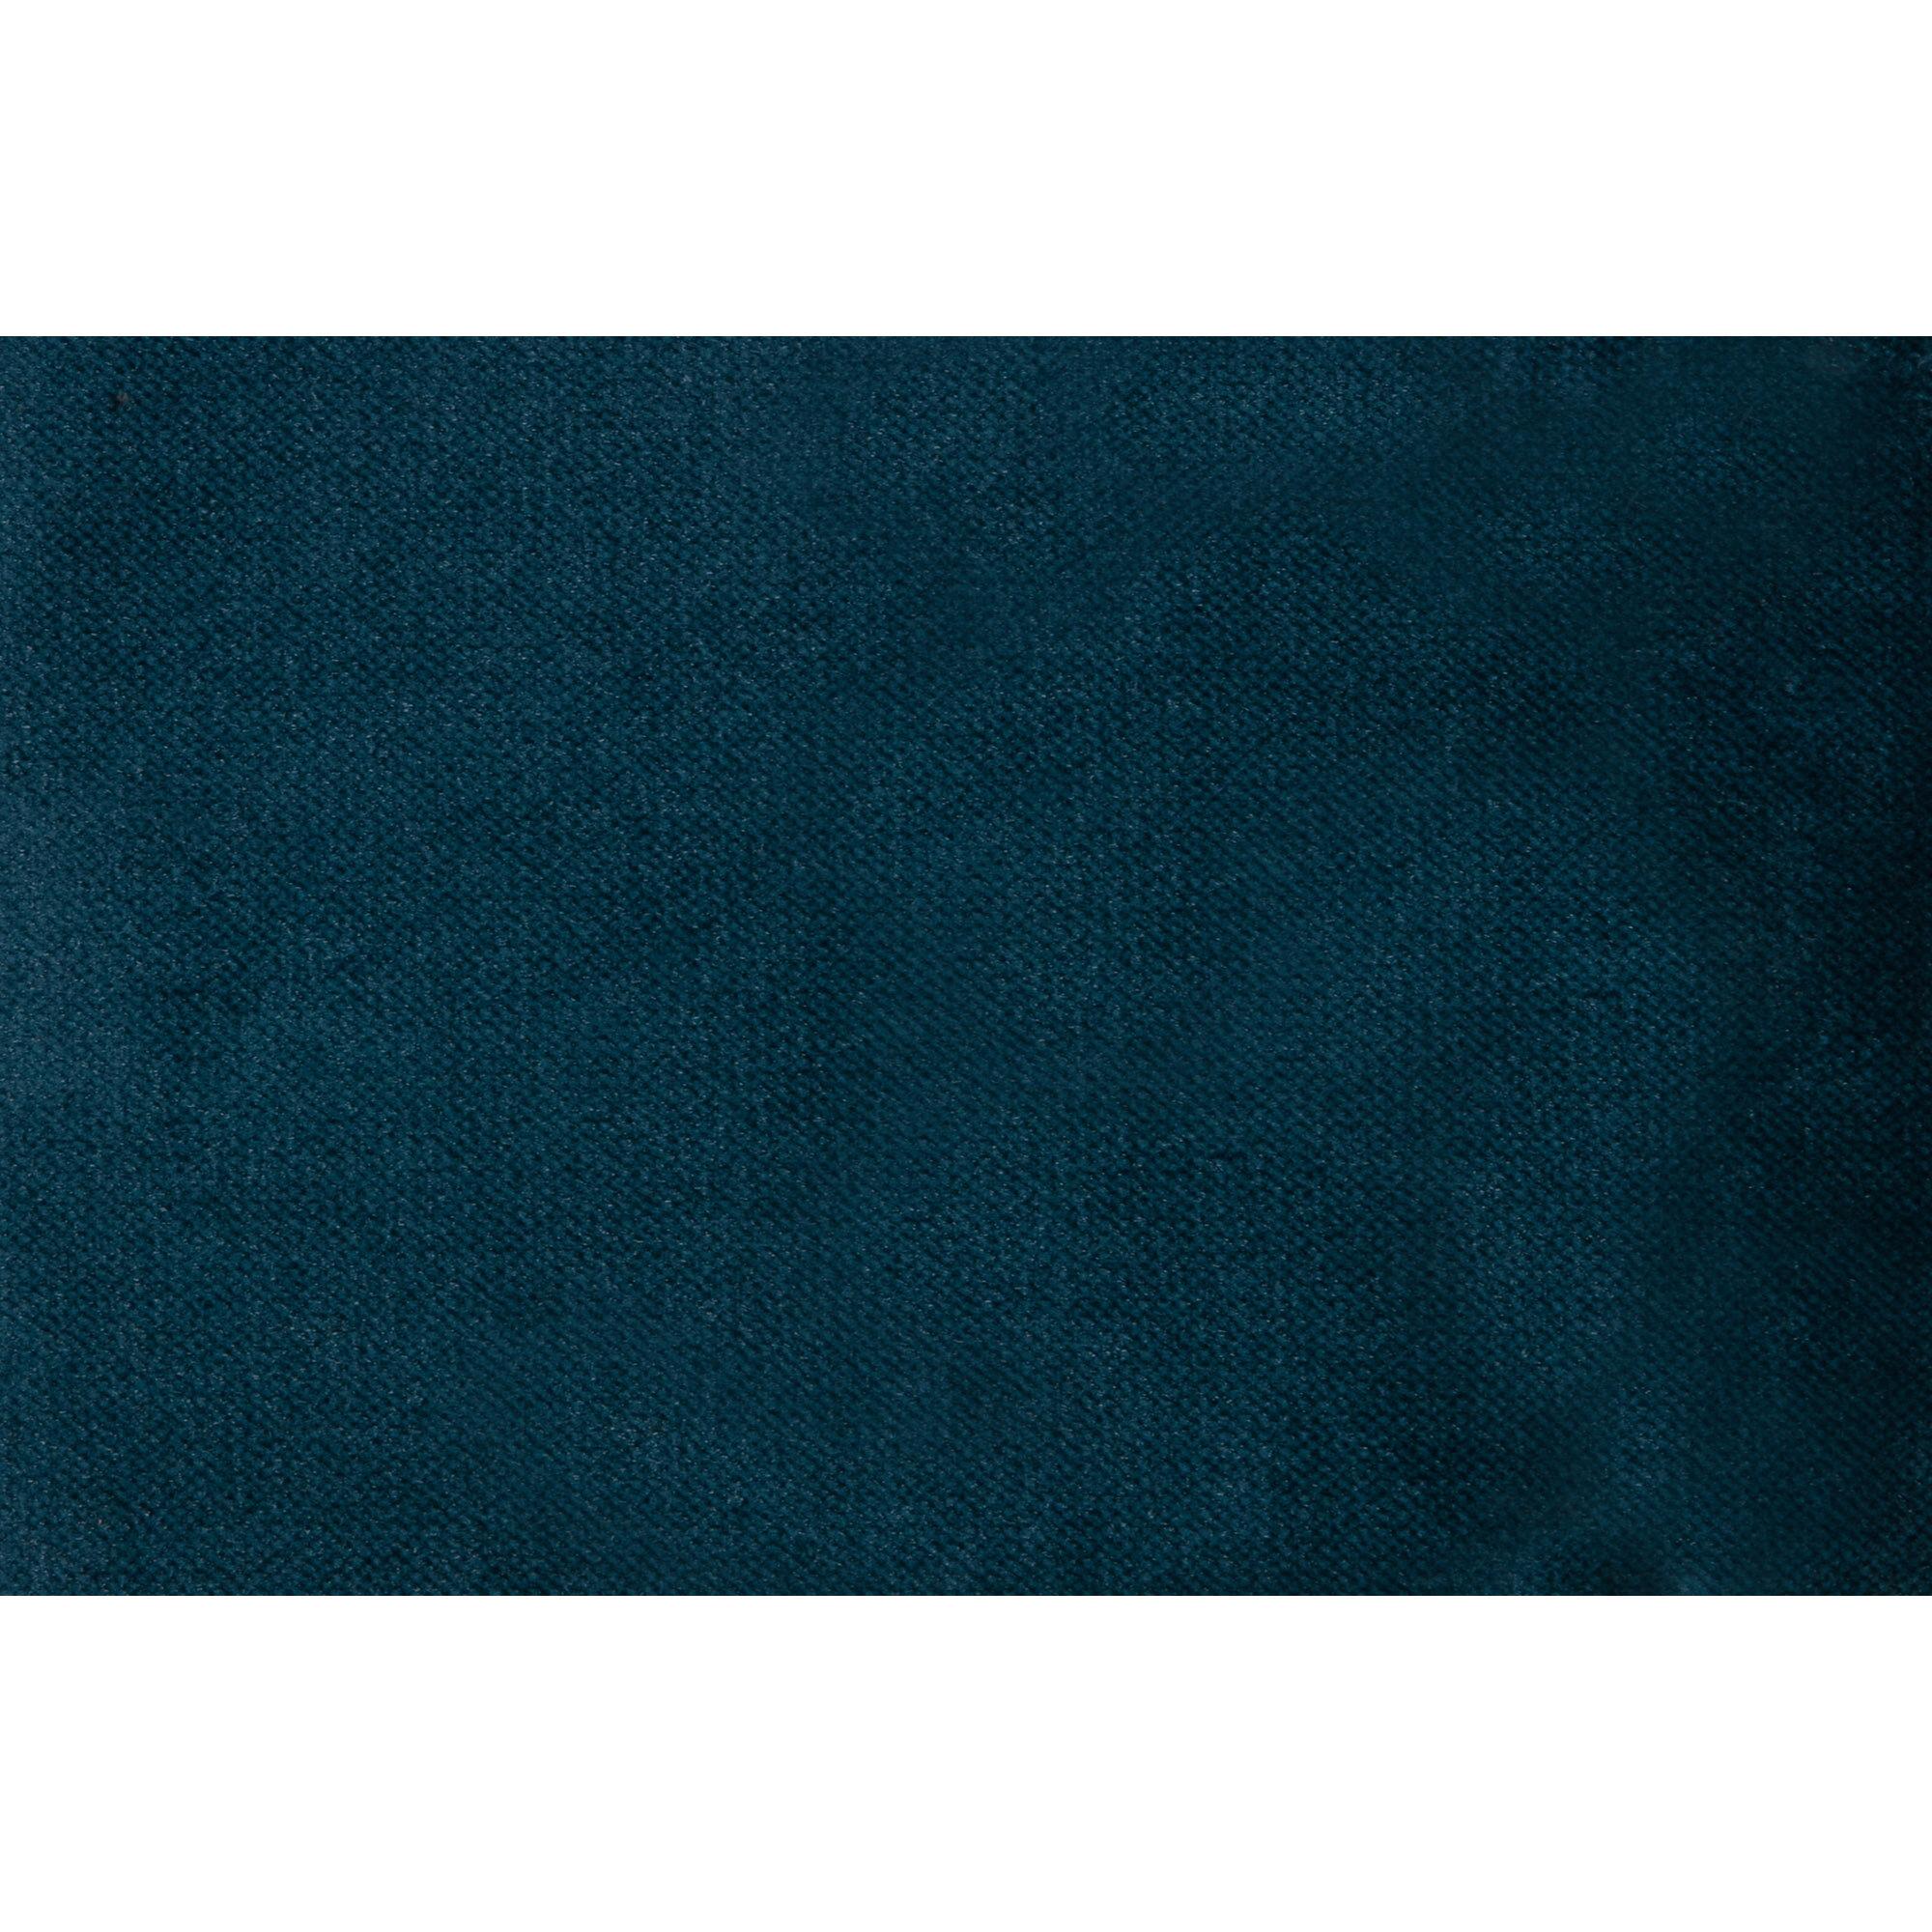  Rodeo Chaiselong Højrevendt Velour - Blue fra BePureHome i Velour (Varenr: 800902-45)